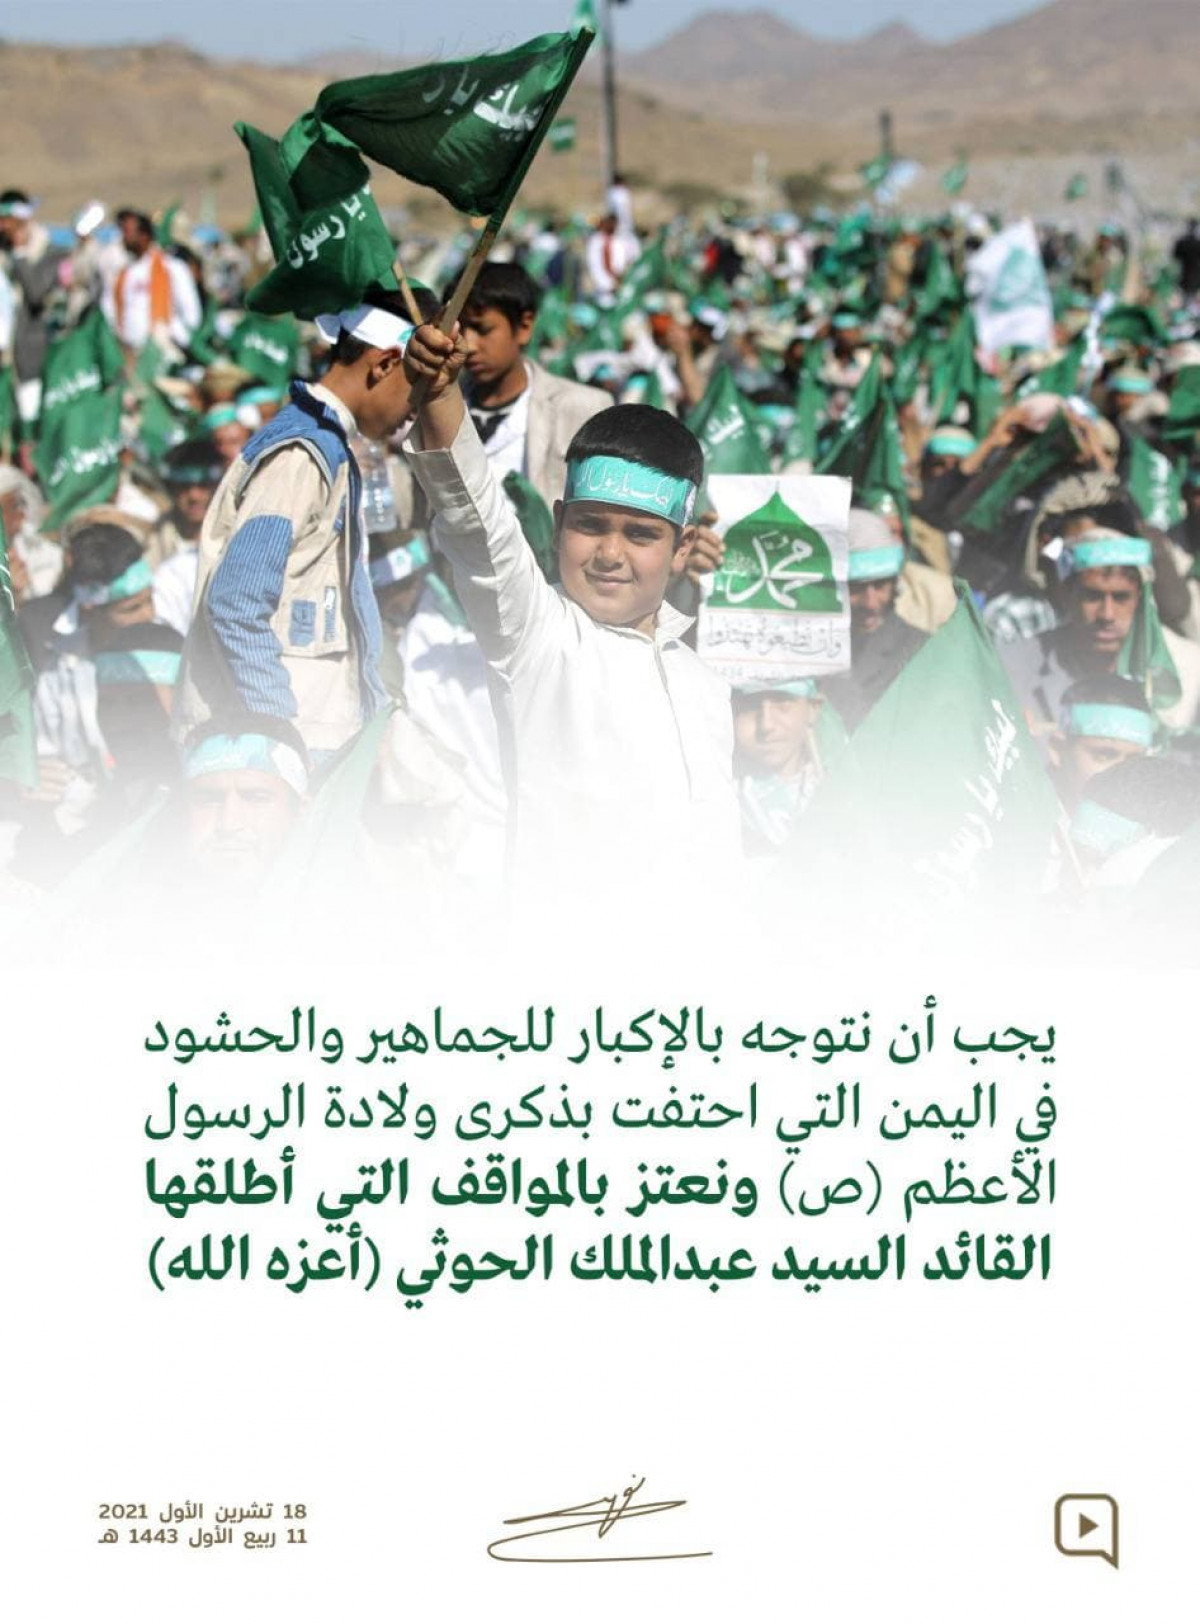 نعتز بالمواقف التي أطلقها القائد السيد عبدالملك الحوثي